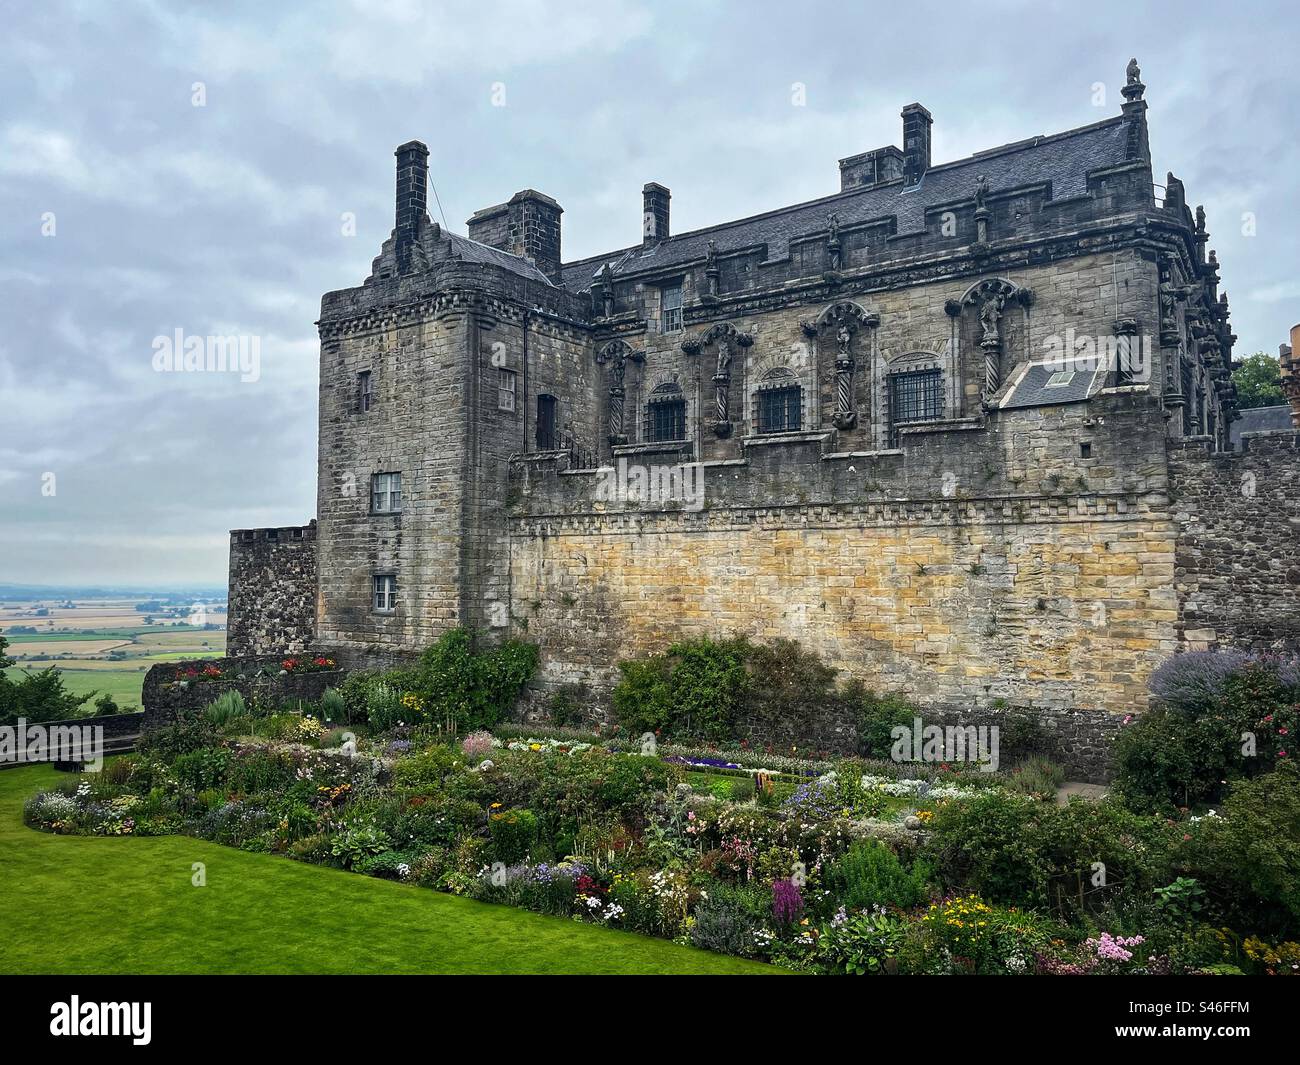 Stirling Castle in Schottland. Stirling Castle war der Schlüssel zum Königreich Schottland und überragte einen riesigen vulkanischen Felsen über dem Fluss Forth am Treffpunkt zwischen Lowlands und Highlands. Stockfoto